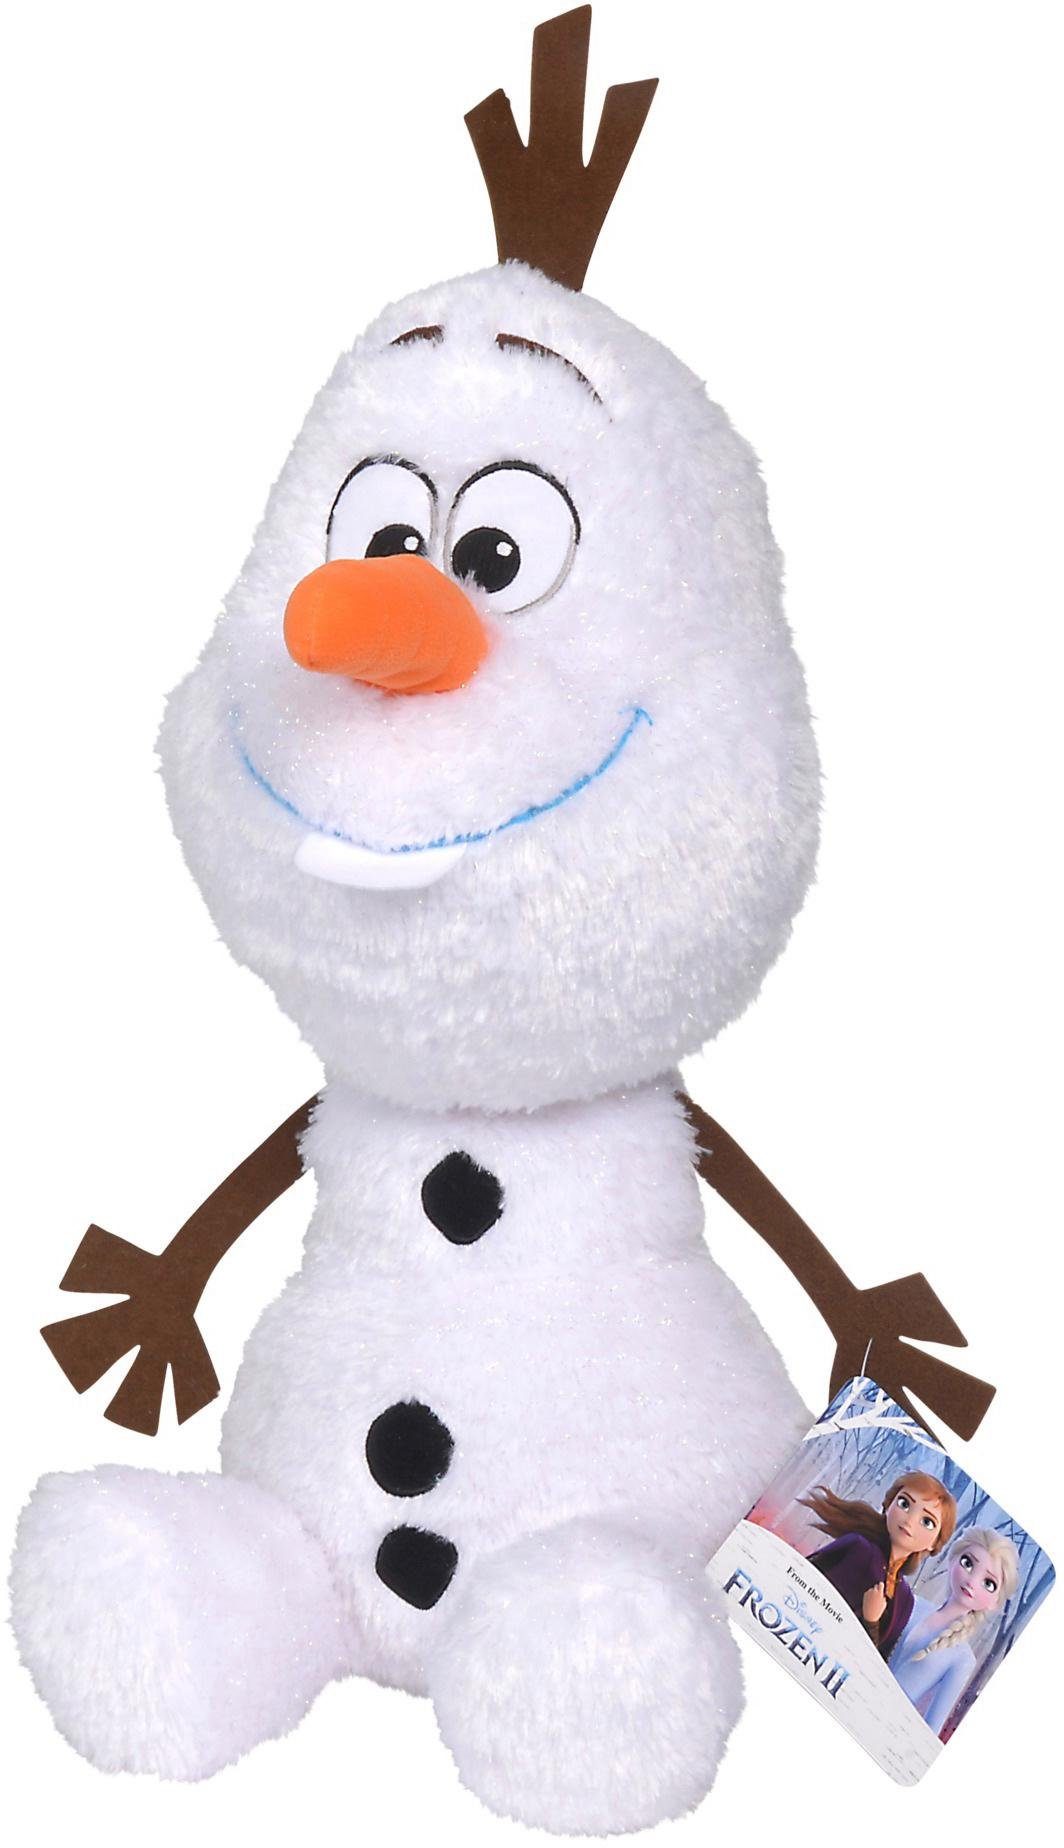 Disney Frozen 2 Olaf spricht Activity Plüsch Eiskönigin Plüschtier Kuscheltier 